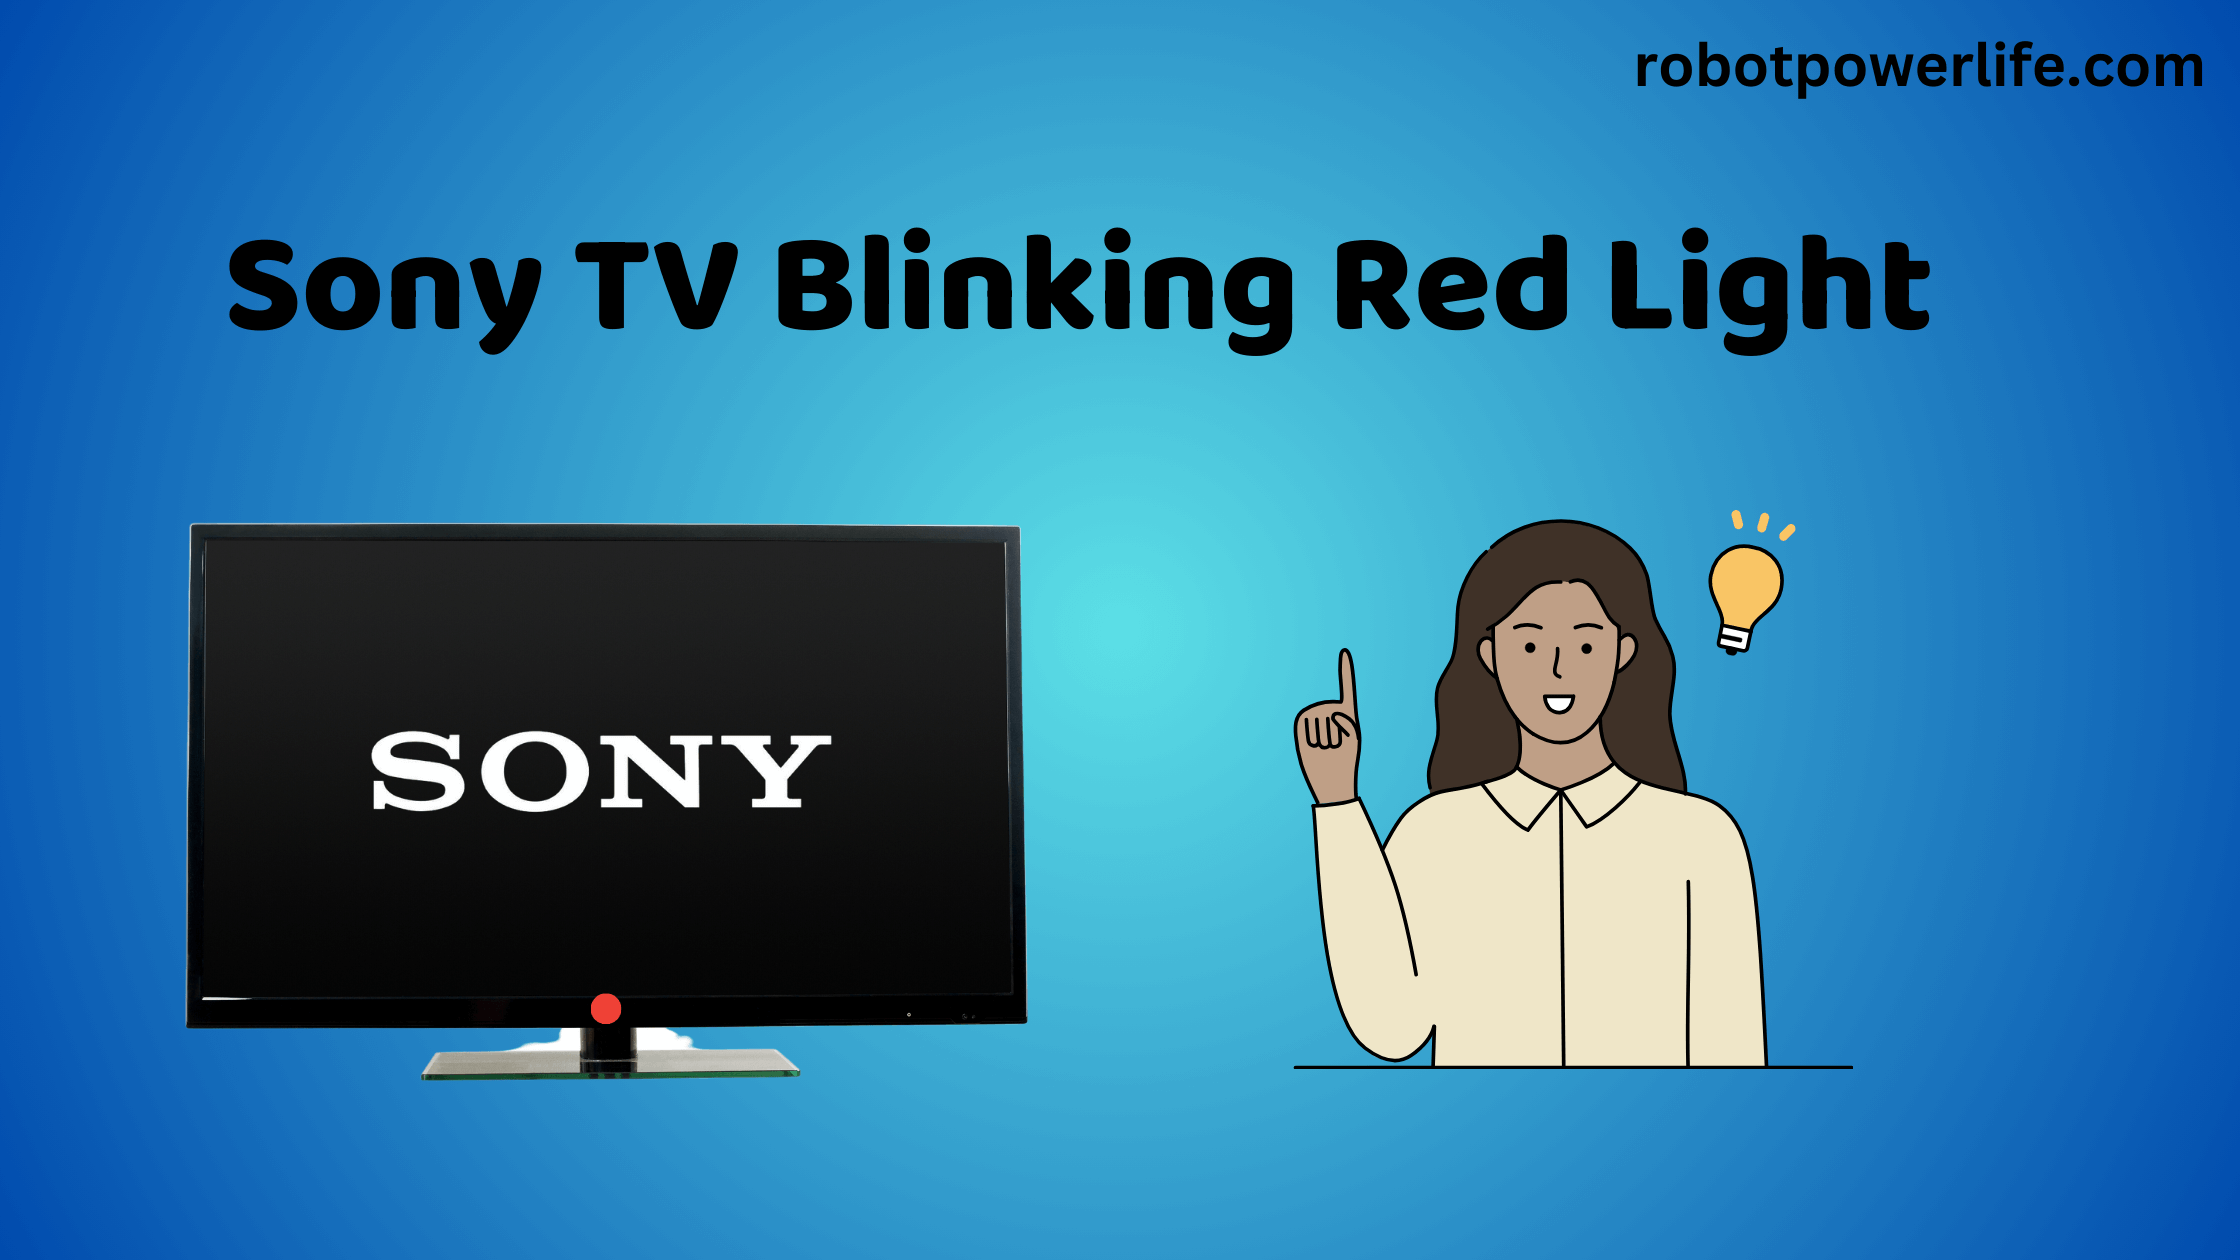 Sony TV Blinking Red Light